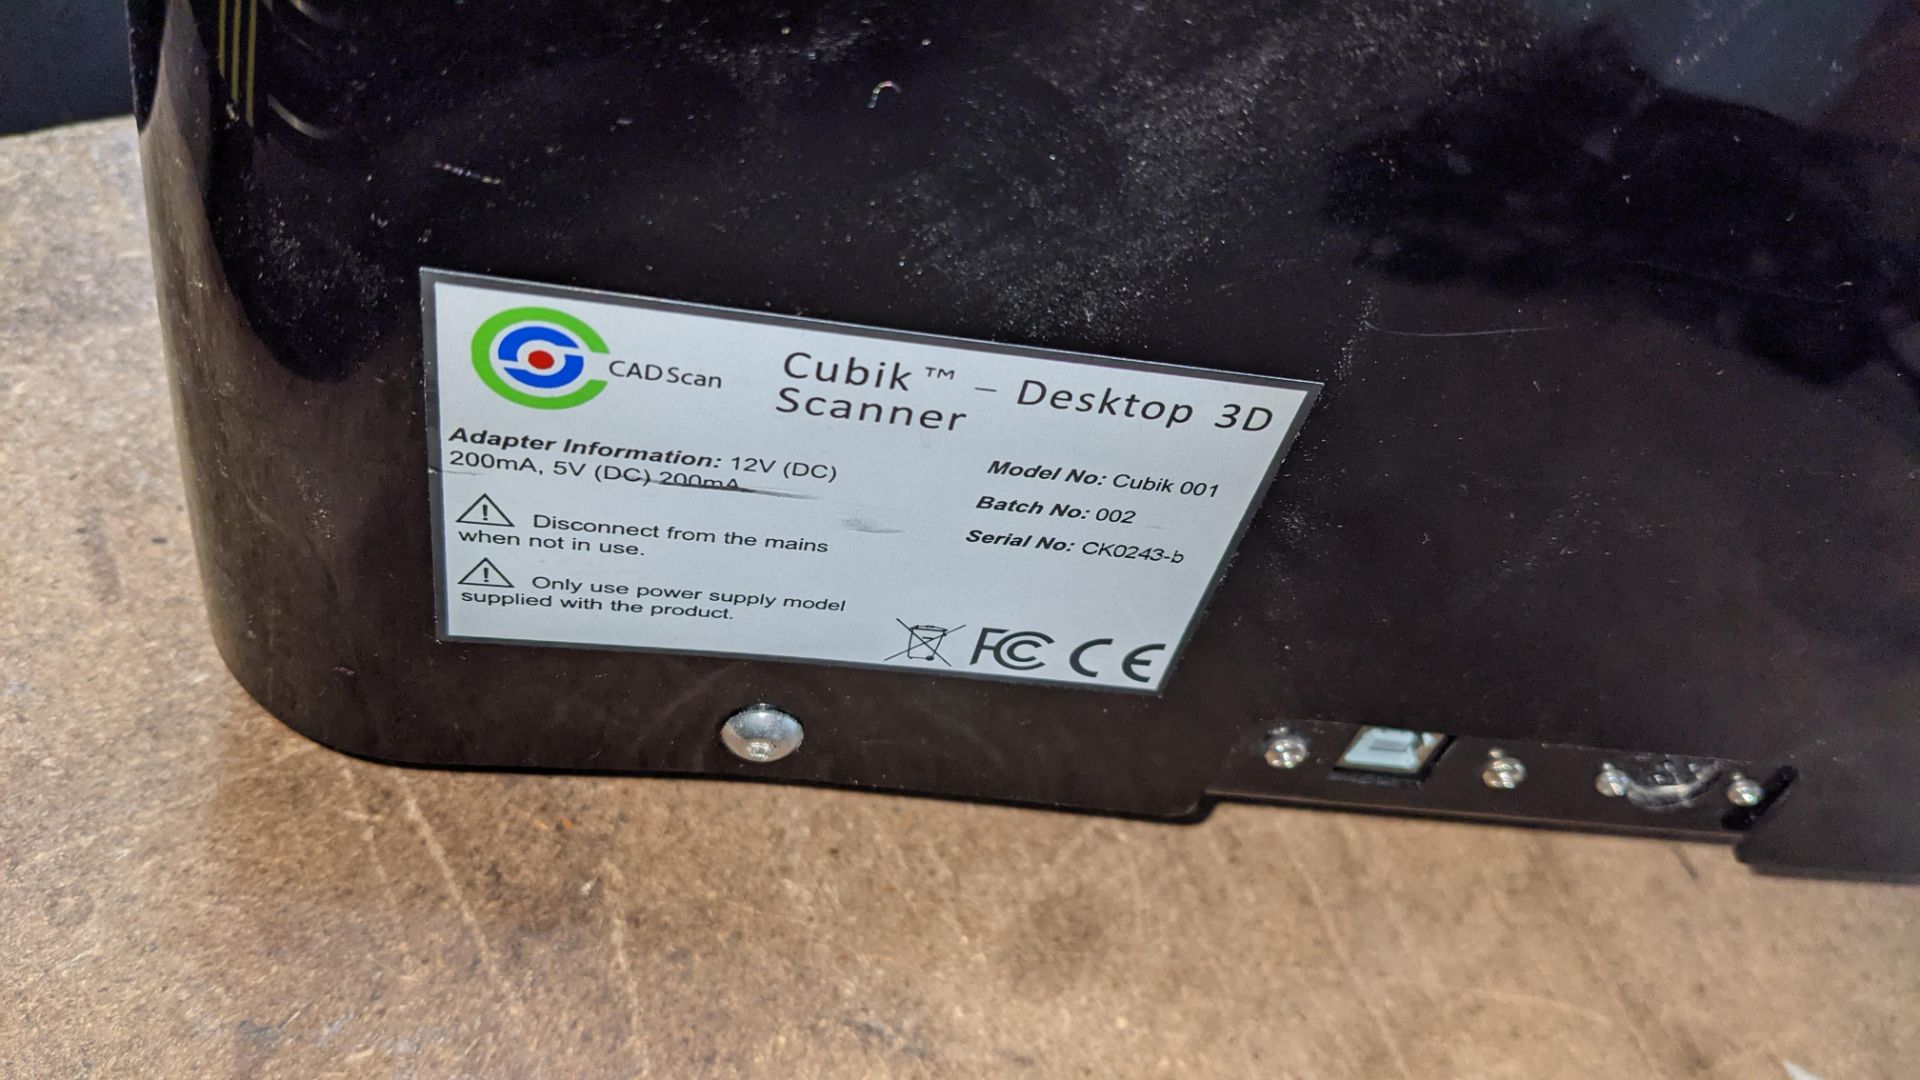 Cubik desktop 3D scanner model Cubik 001, including power adaptor - Image 8 of 10